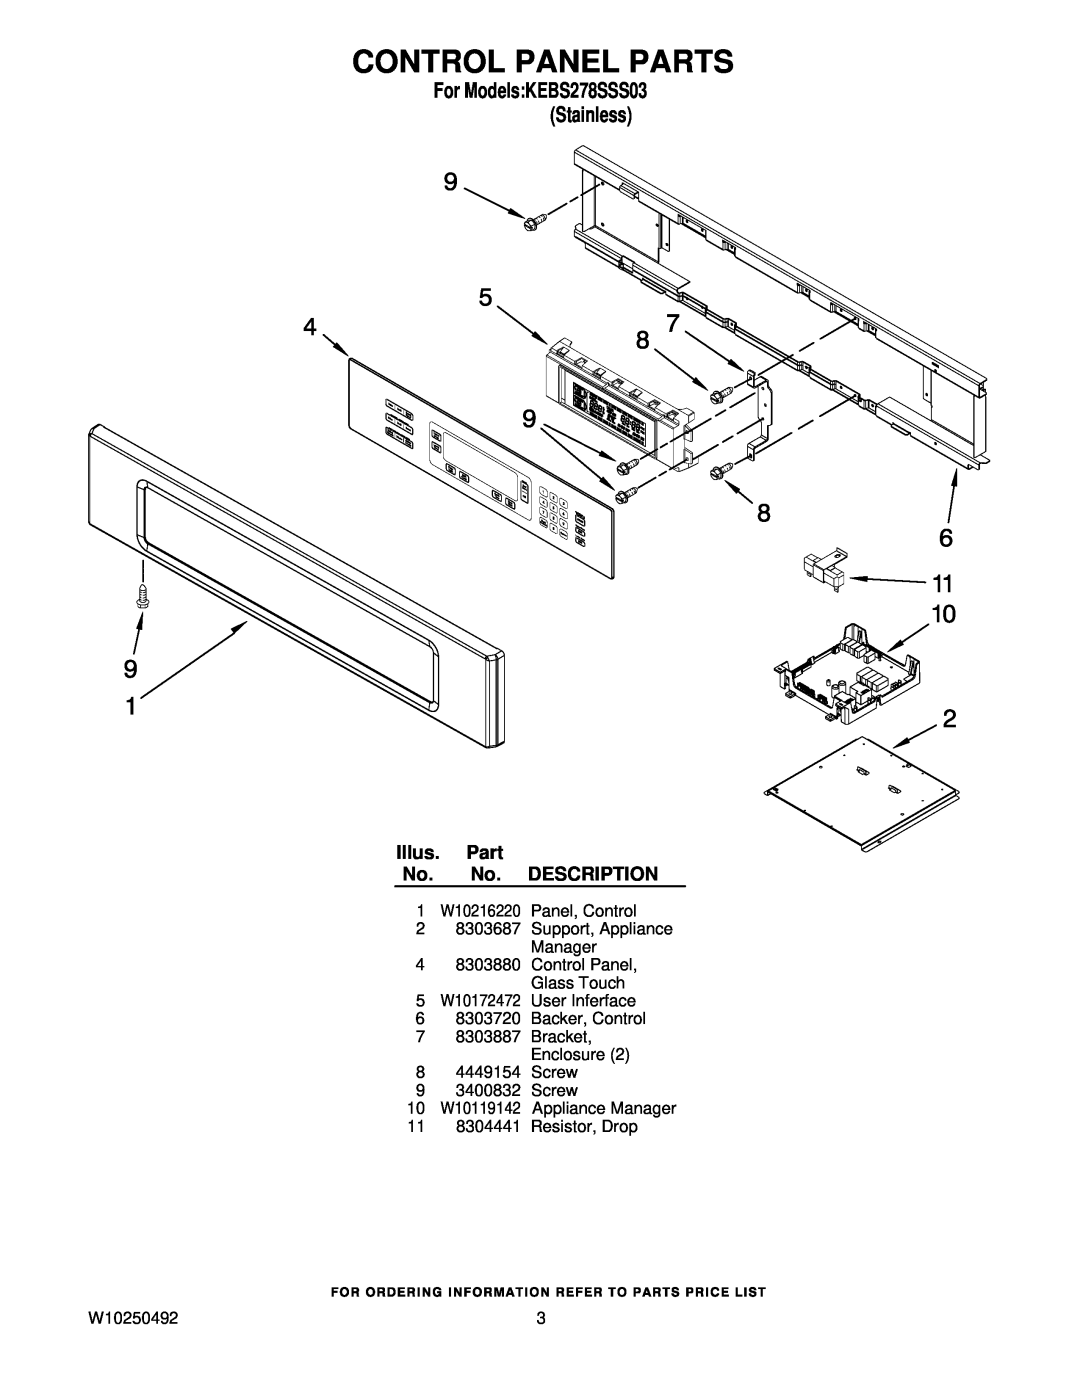 KitchenAid KEBS278SSS03 manual Control Panel Parts, Illus. Part No. No. DESCRIPTION, 11 8304441 Resistor, Drop, W10250492 